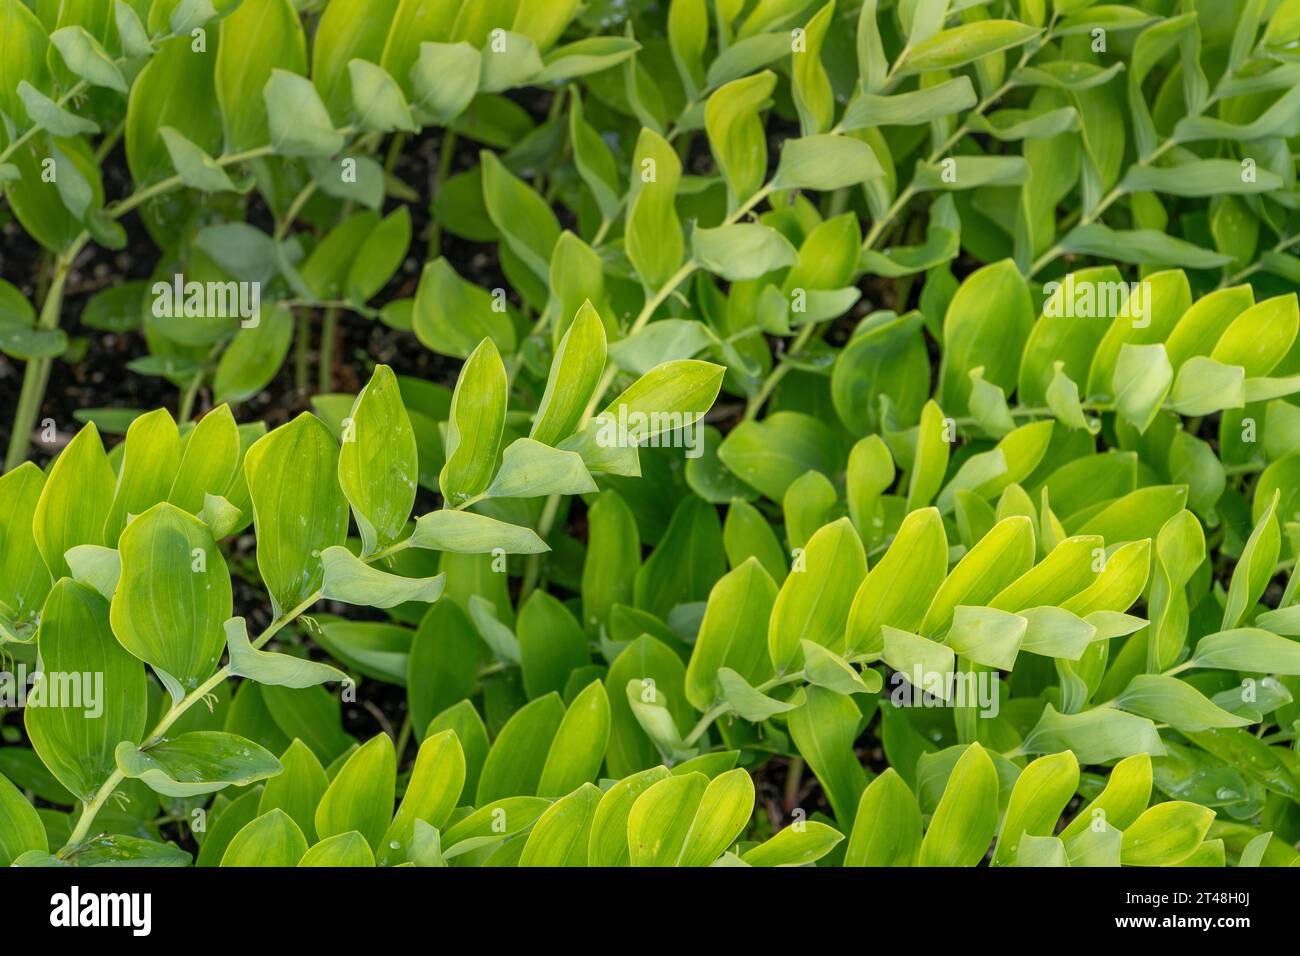 Es ist Polygonatum odoratum, auch bekannt als Solomon's Seal - eine anmutige mehrjährige Pflanze mit bogenförmigen Stämmen. Es lebt in schattigen Gärten und verleiht Eleganz Stockfoto